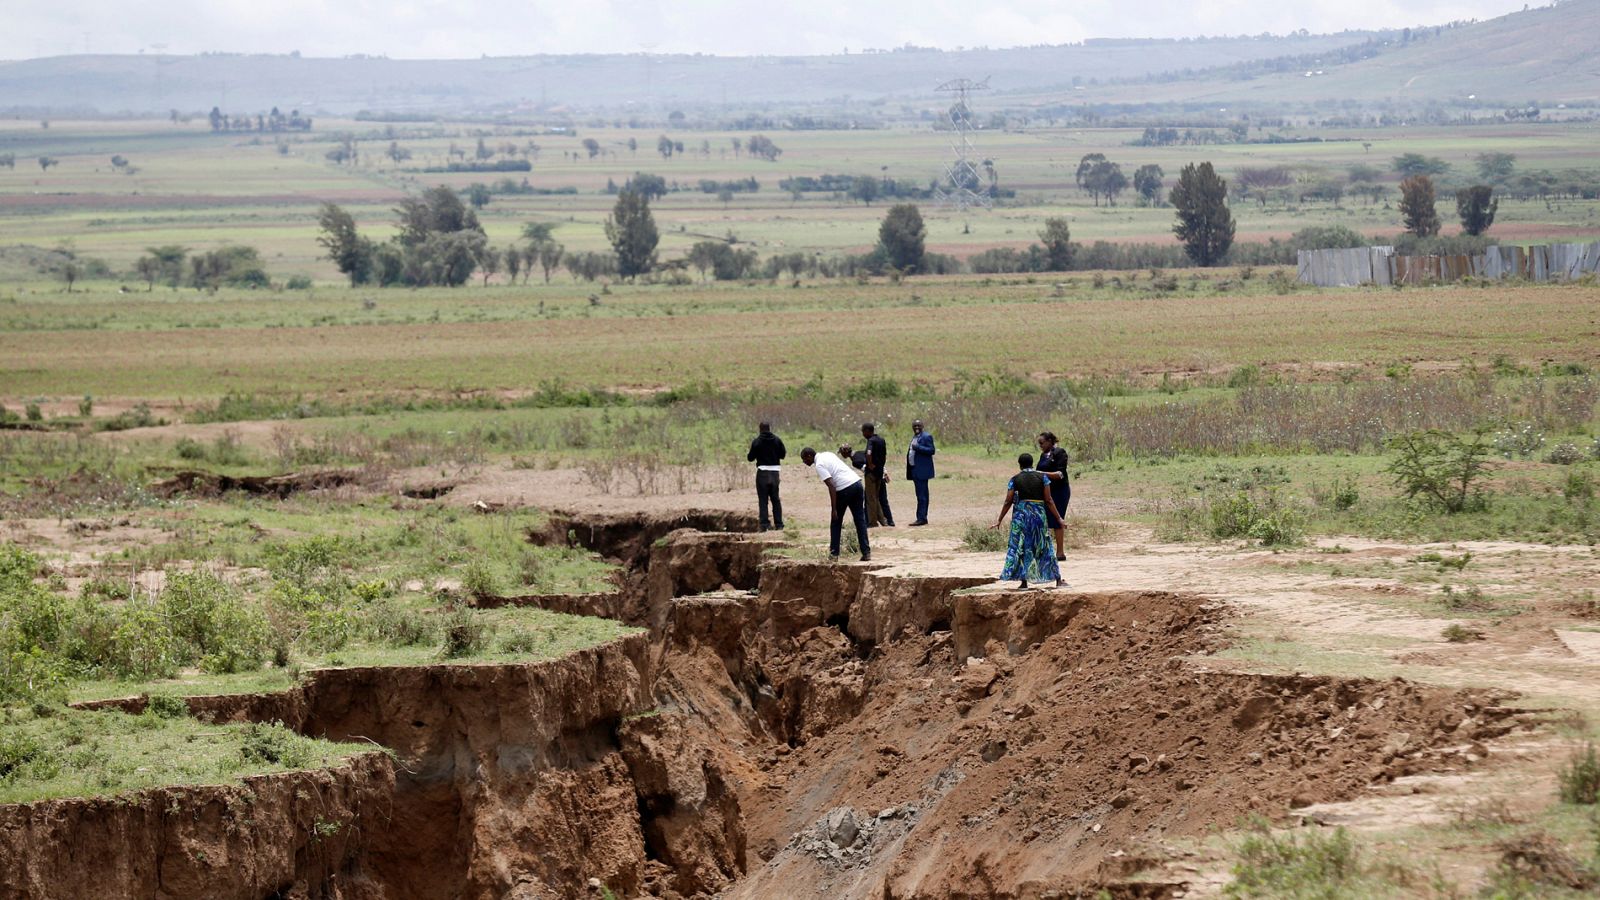 Telediario 1: Aparece una enorme grieta en Kenia que podría dividir África en dos | RTVE Play